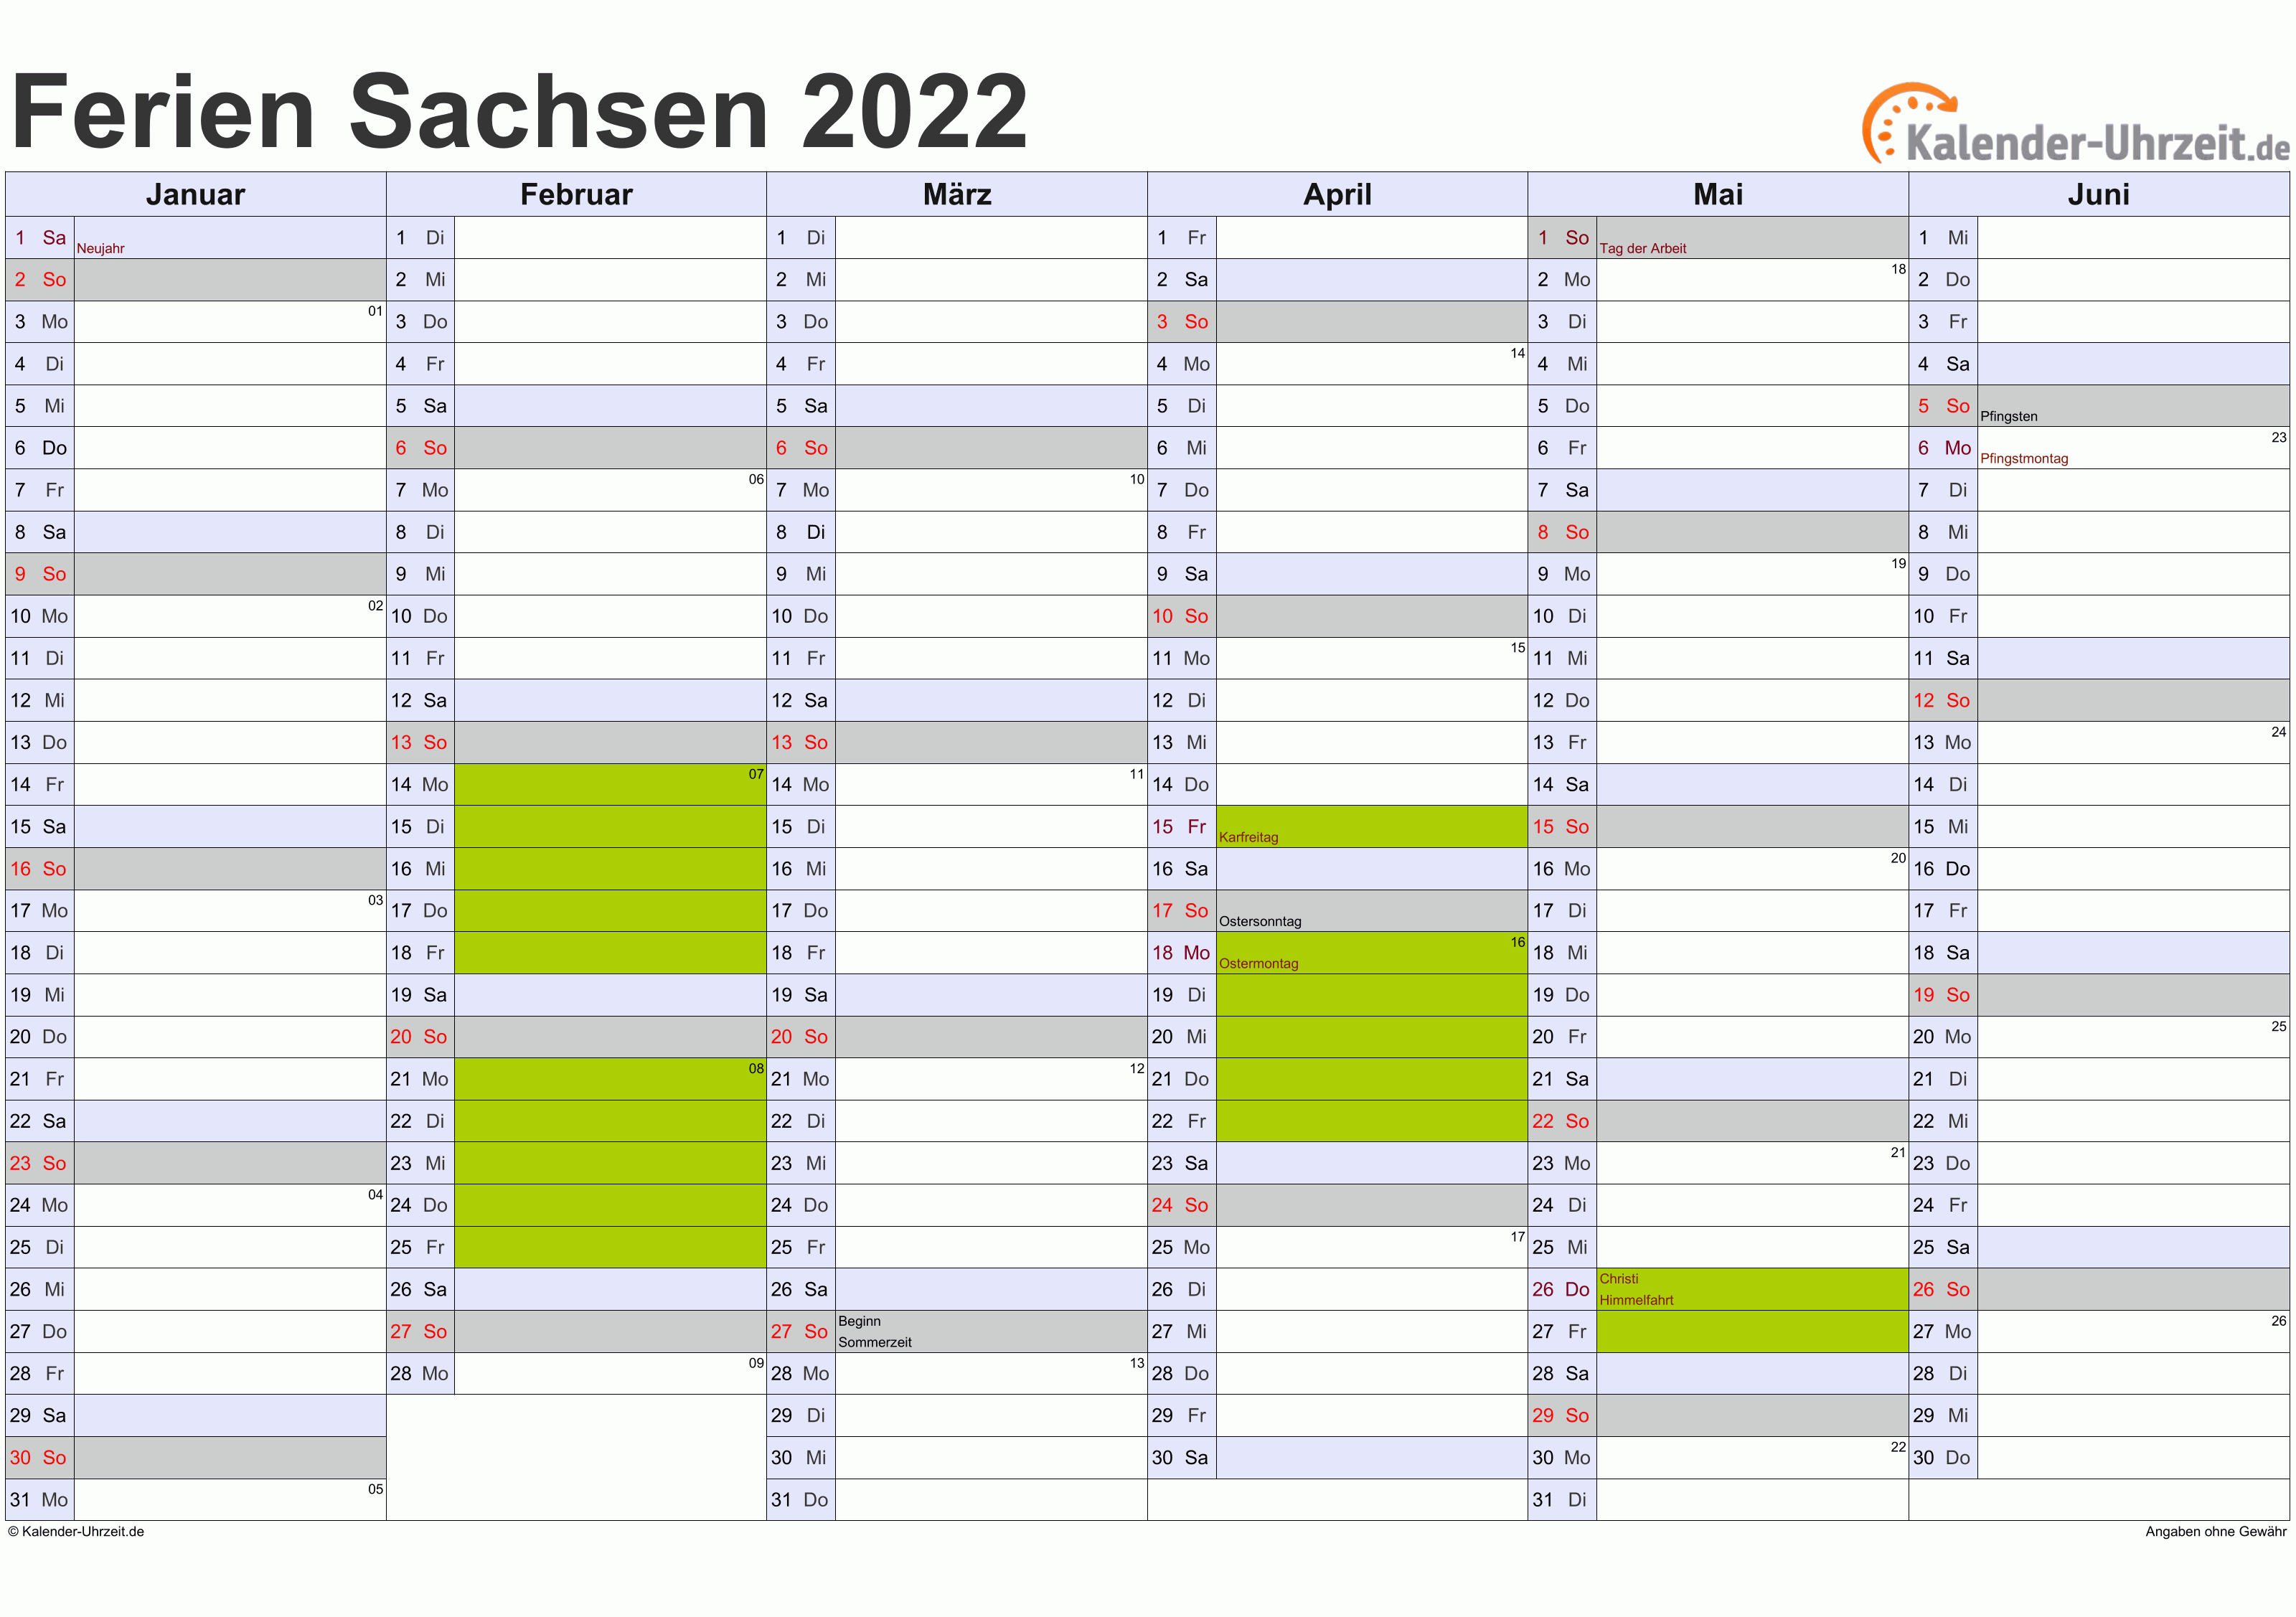  Ferien  Sachsen 2022  Ferienkalender zum  Ausdrucken 